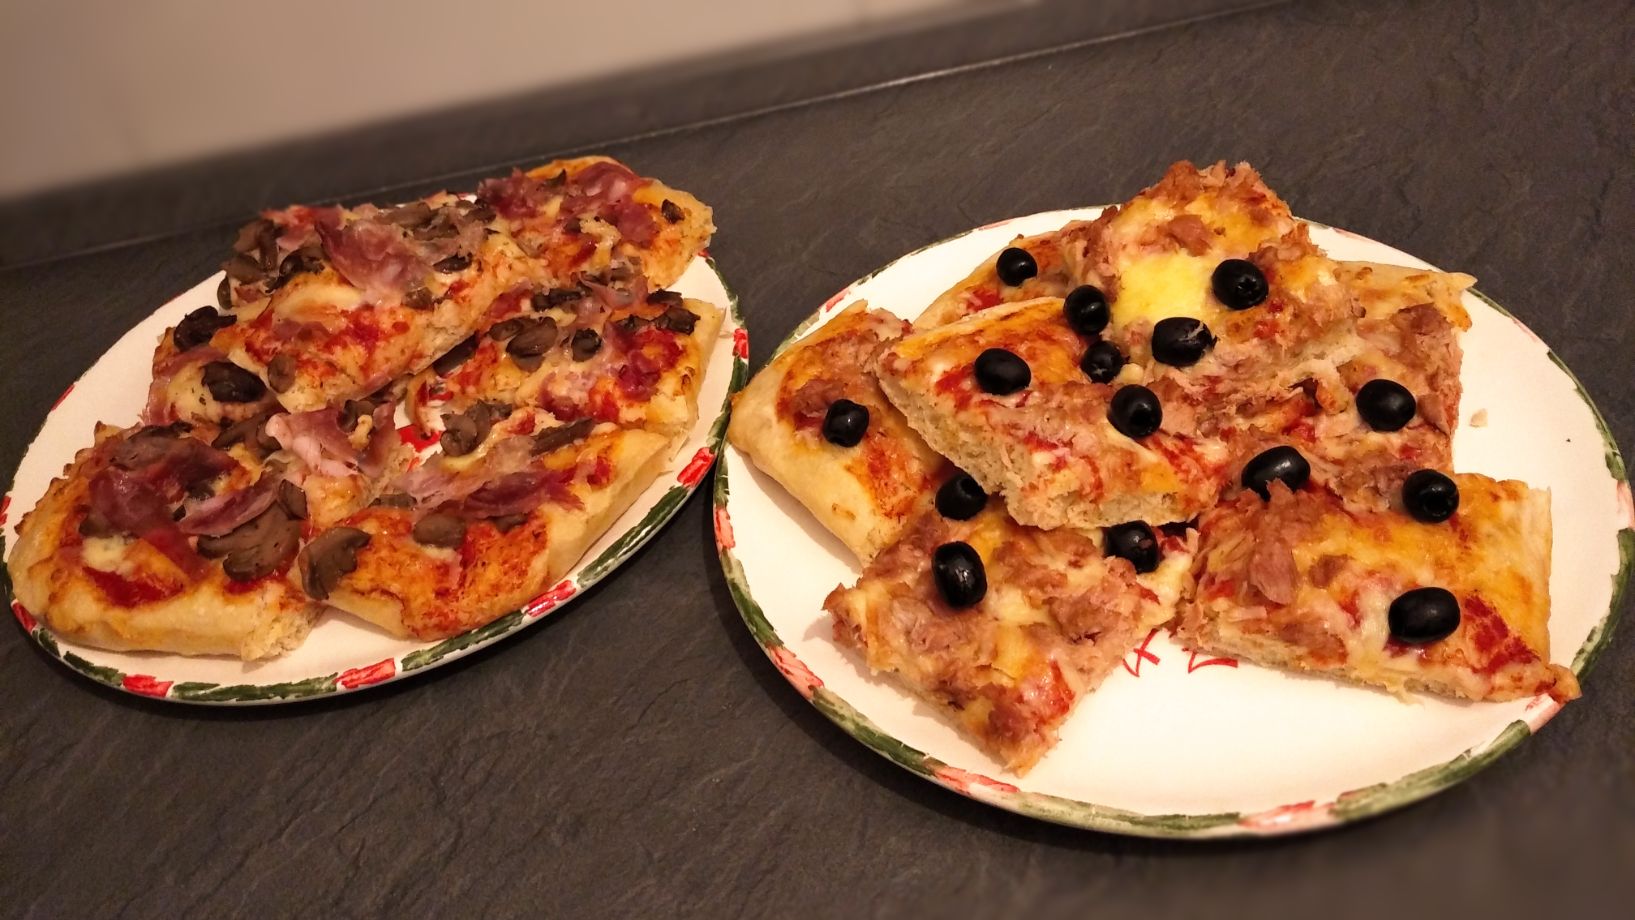 Pizza tonno olive, pizza prosciutto funghi